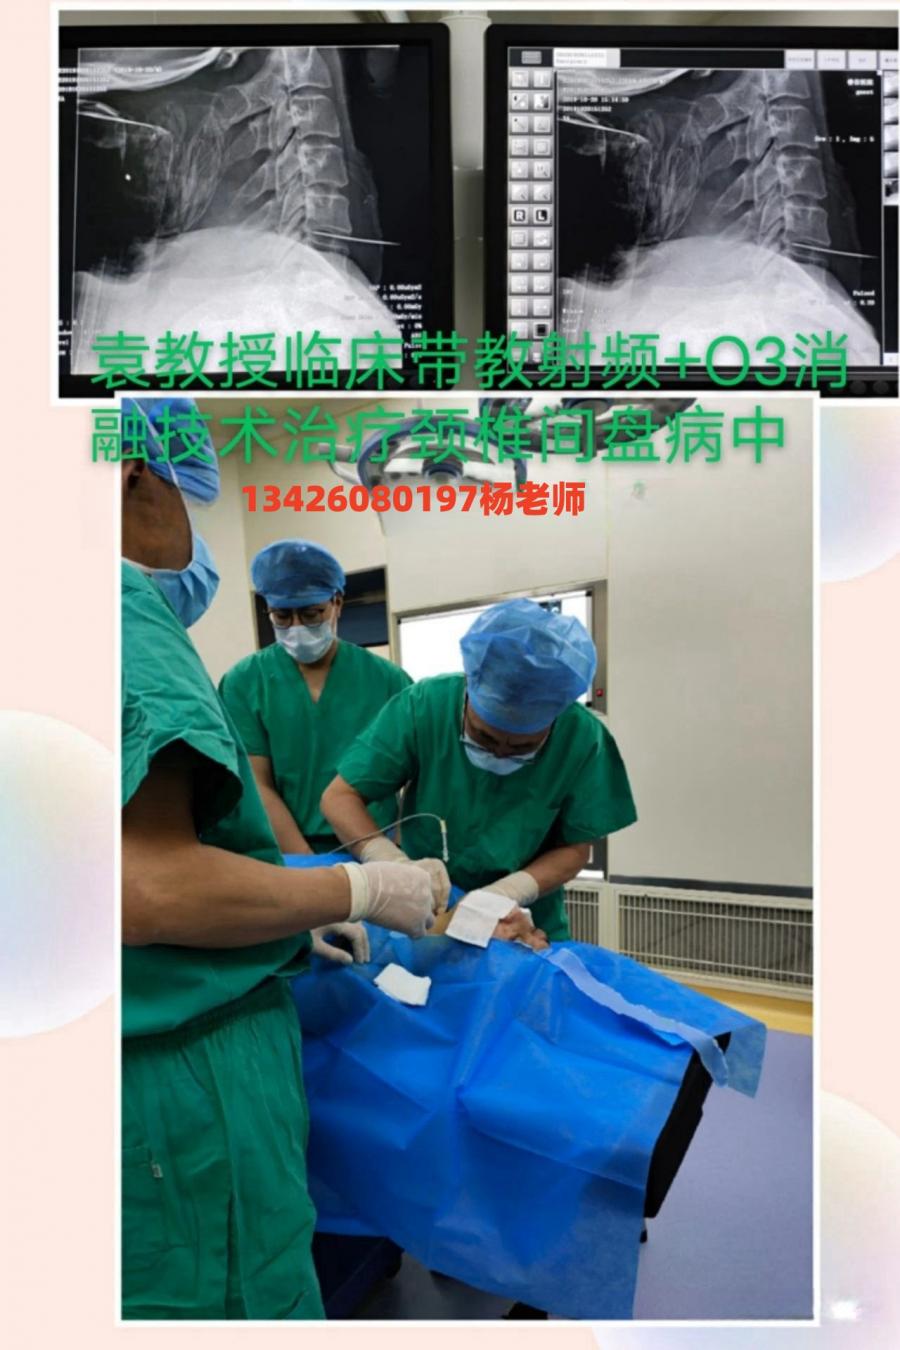 袁明省教授 带教动脉注射专业治疗脑血管病